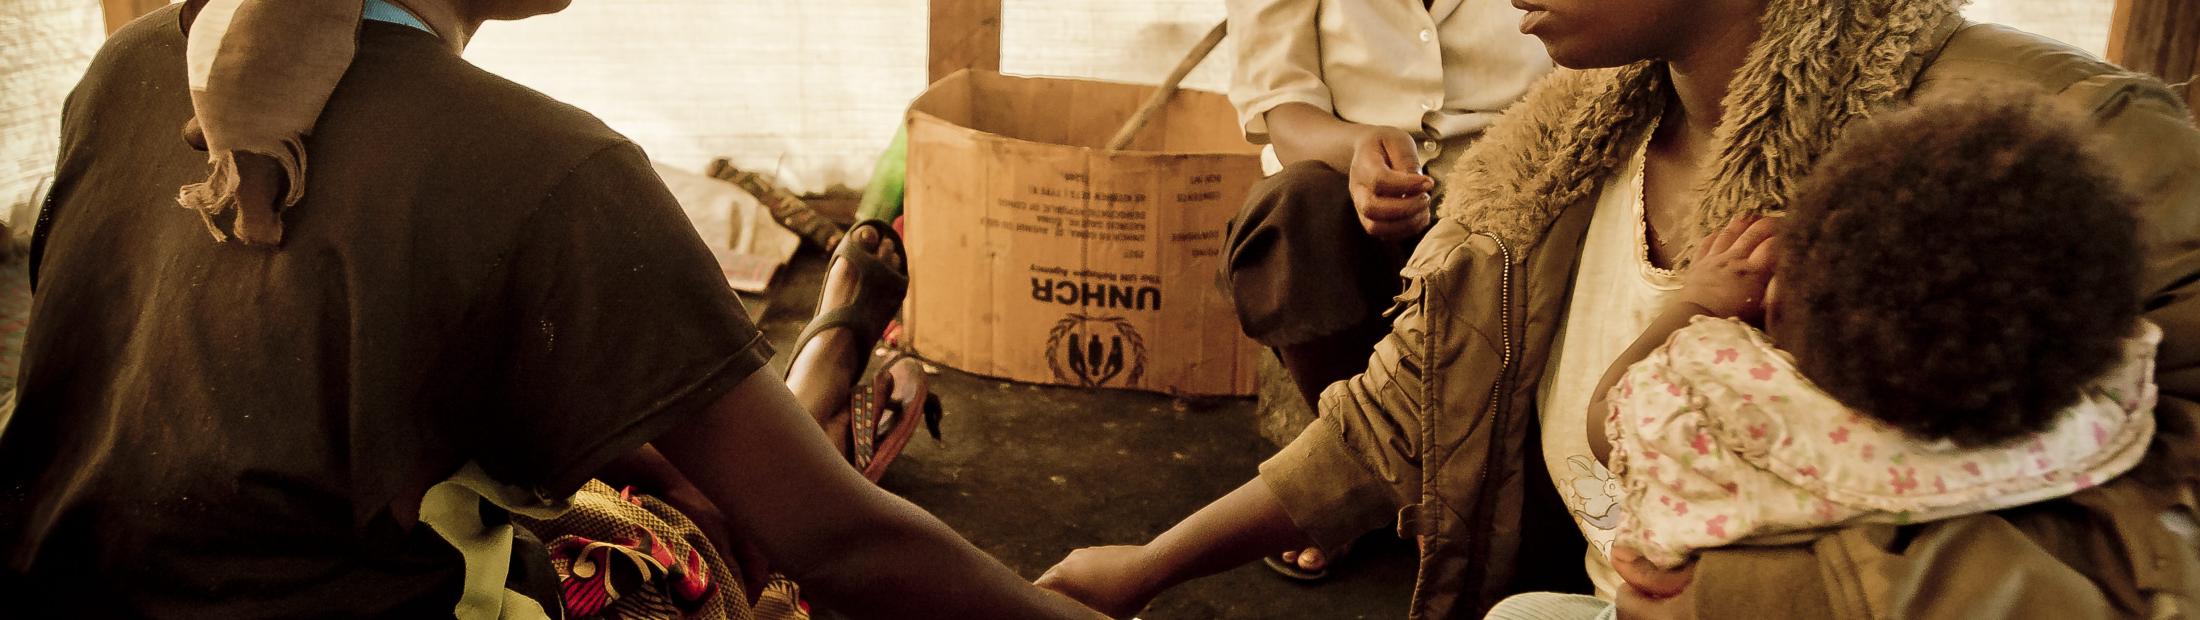 ACNUR necesita 70 millones de dólares más para los desplazados congoleños